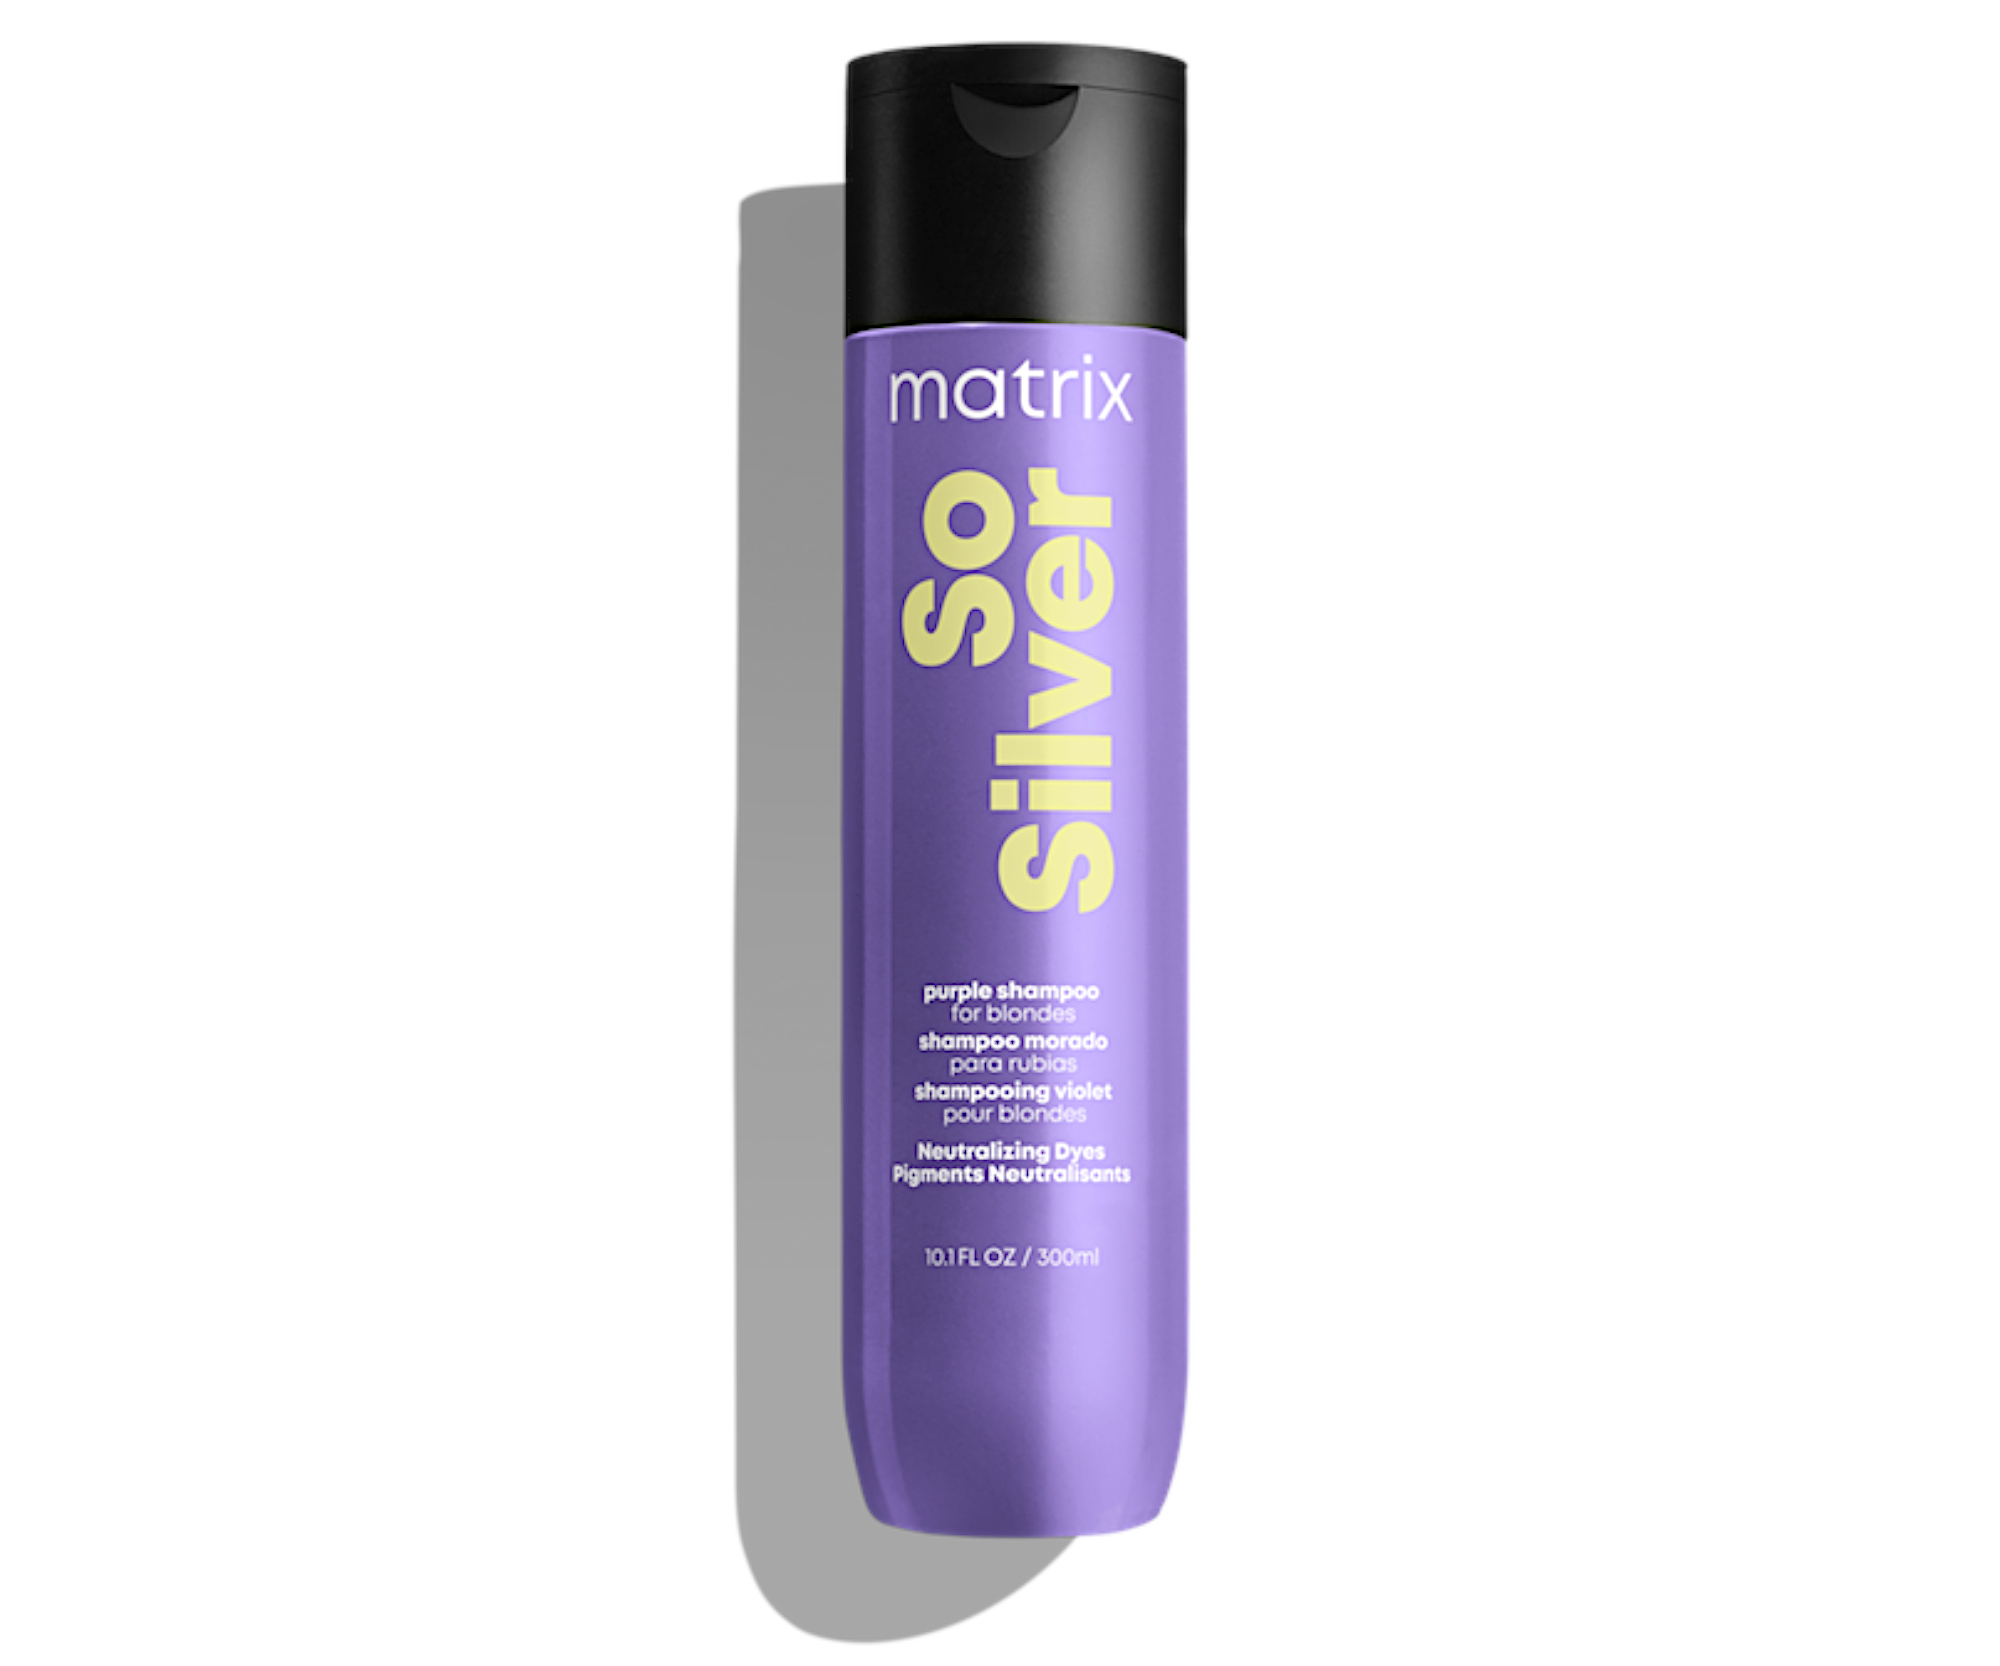 Šampon pro blond a melírované vlasy Matrix So Silver - 300 ml + dárek zdarma